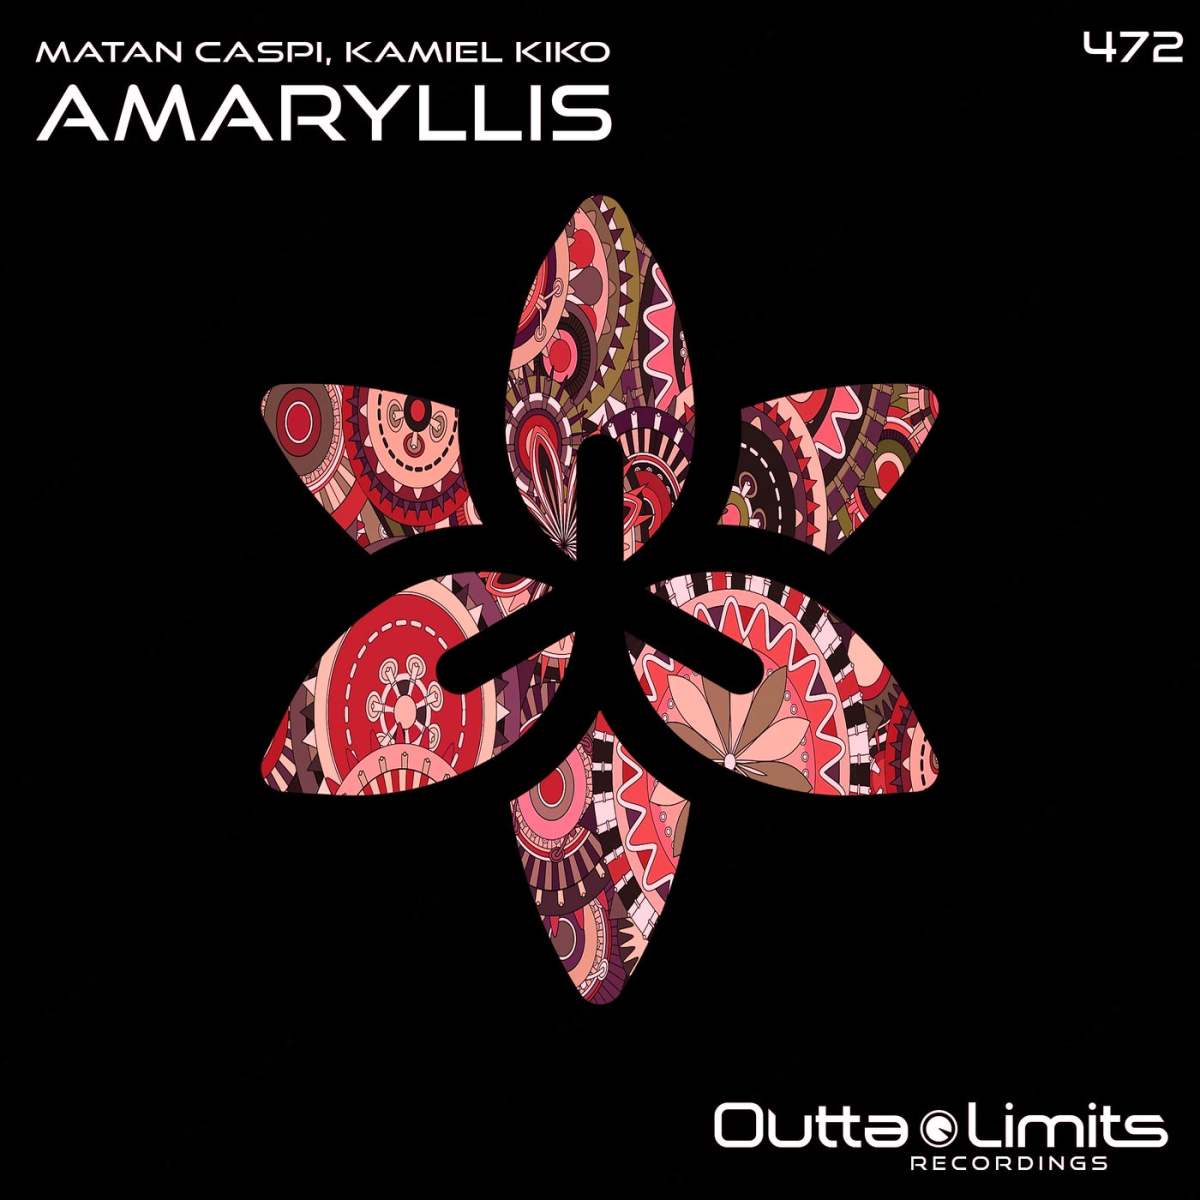 "AMARYLLIS (ORIGINAL MIX)" - MATAN CASPI, KAMIEL KIKO